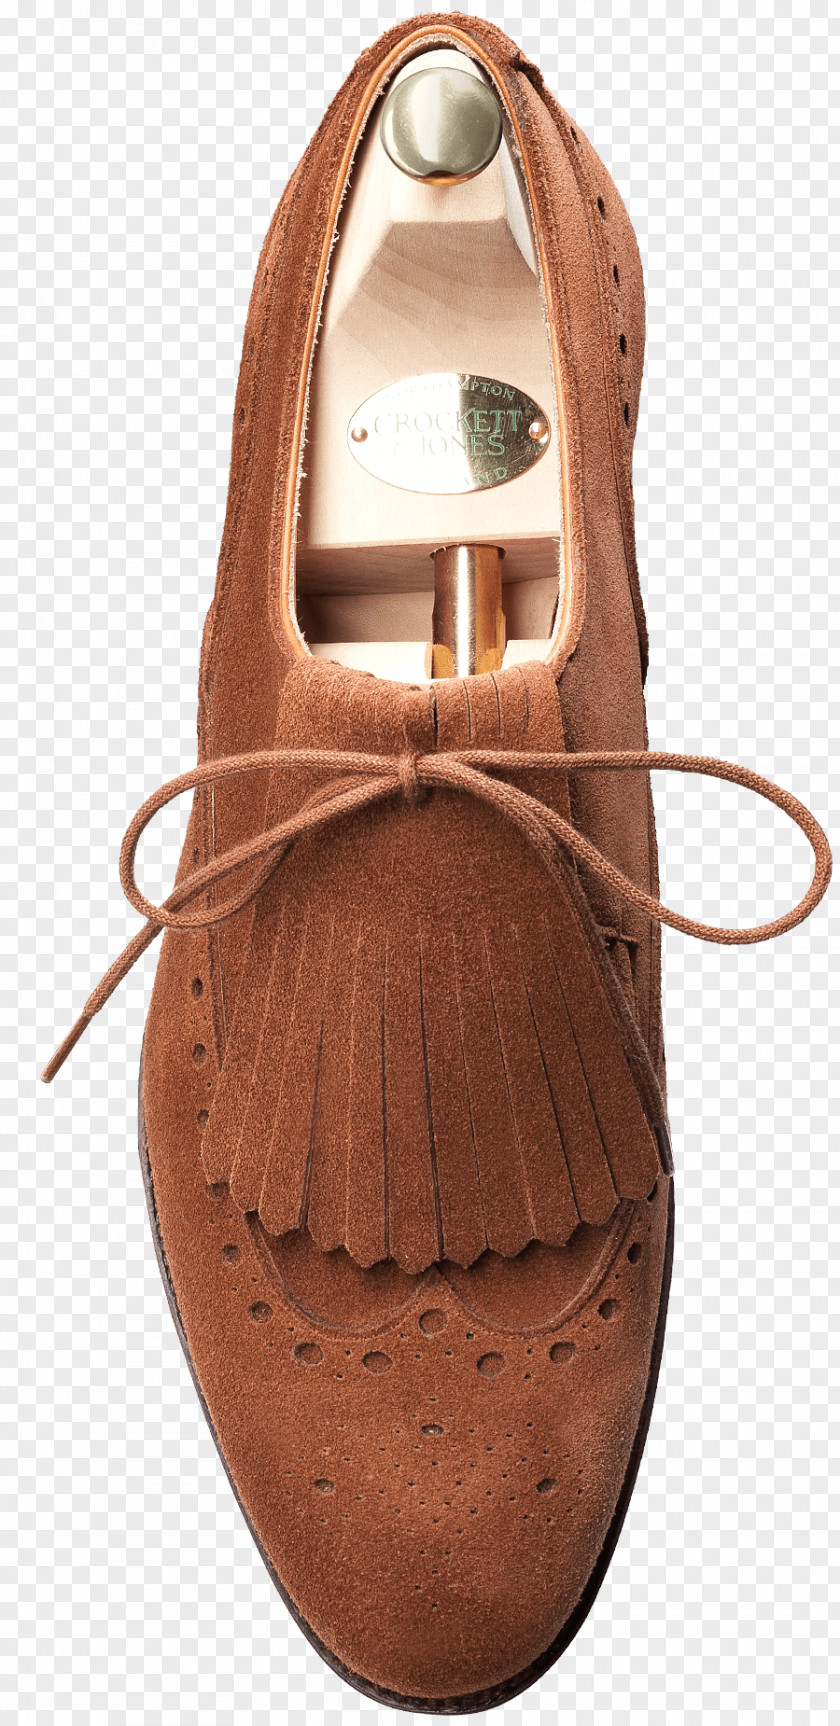 Jessica Simpson Shoes Wholesale Supplier Shoe Suede Product Design PNG